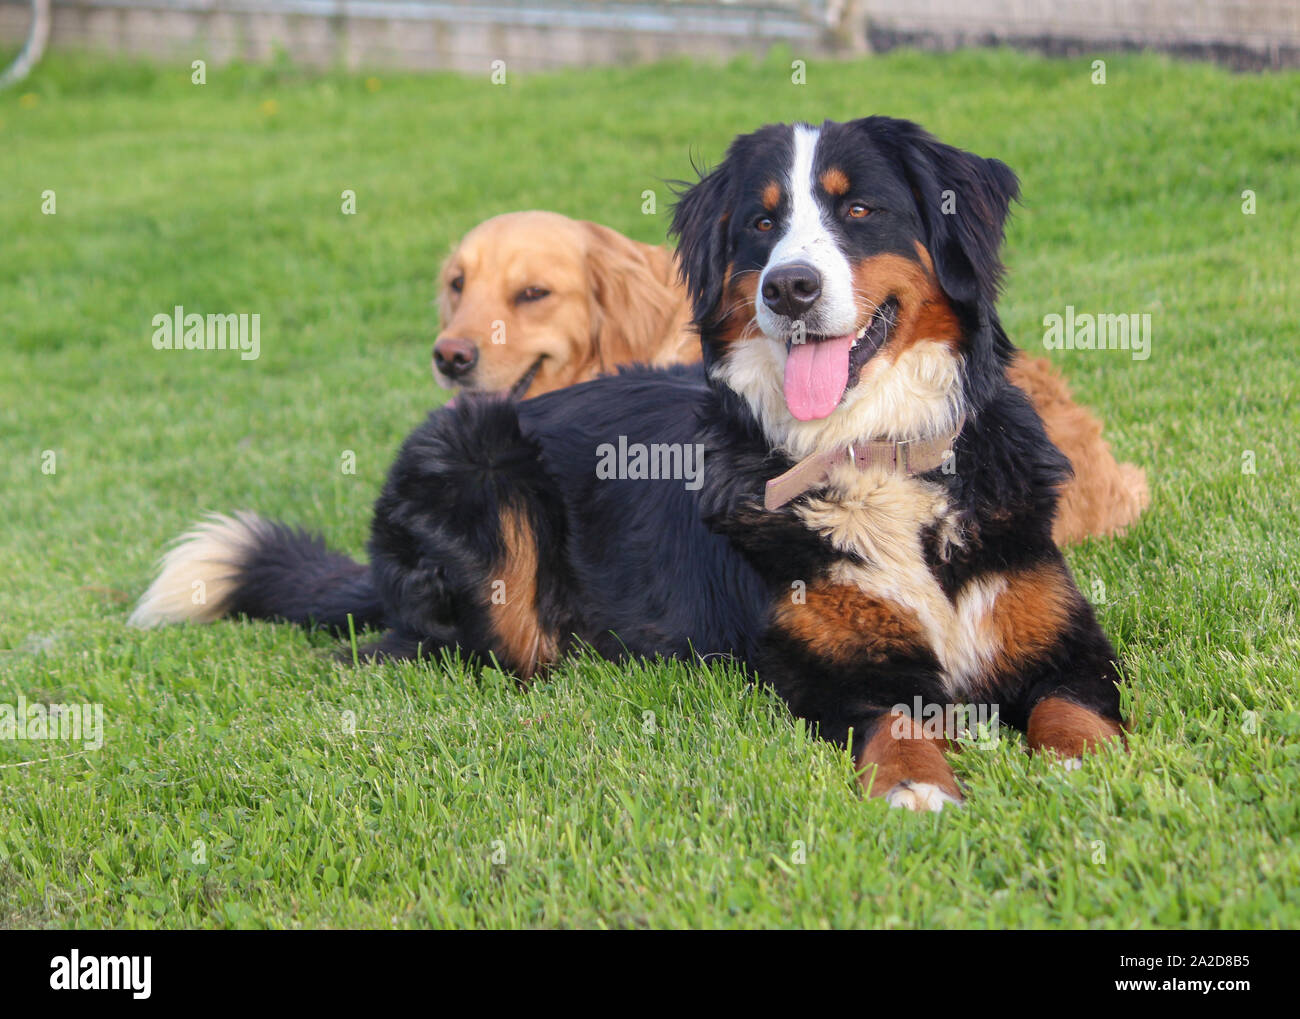 Berner Sennenhund mit Golden Retriever im Hintergrund Stockfotografie -  Alamy